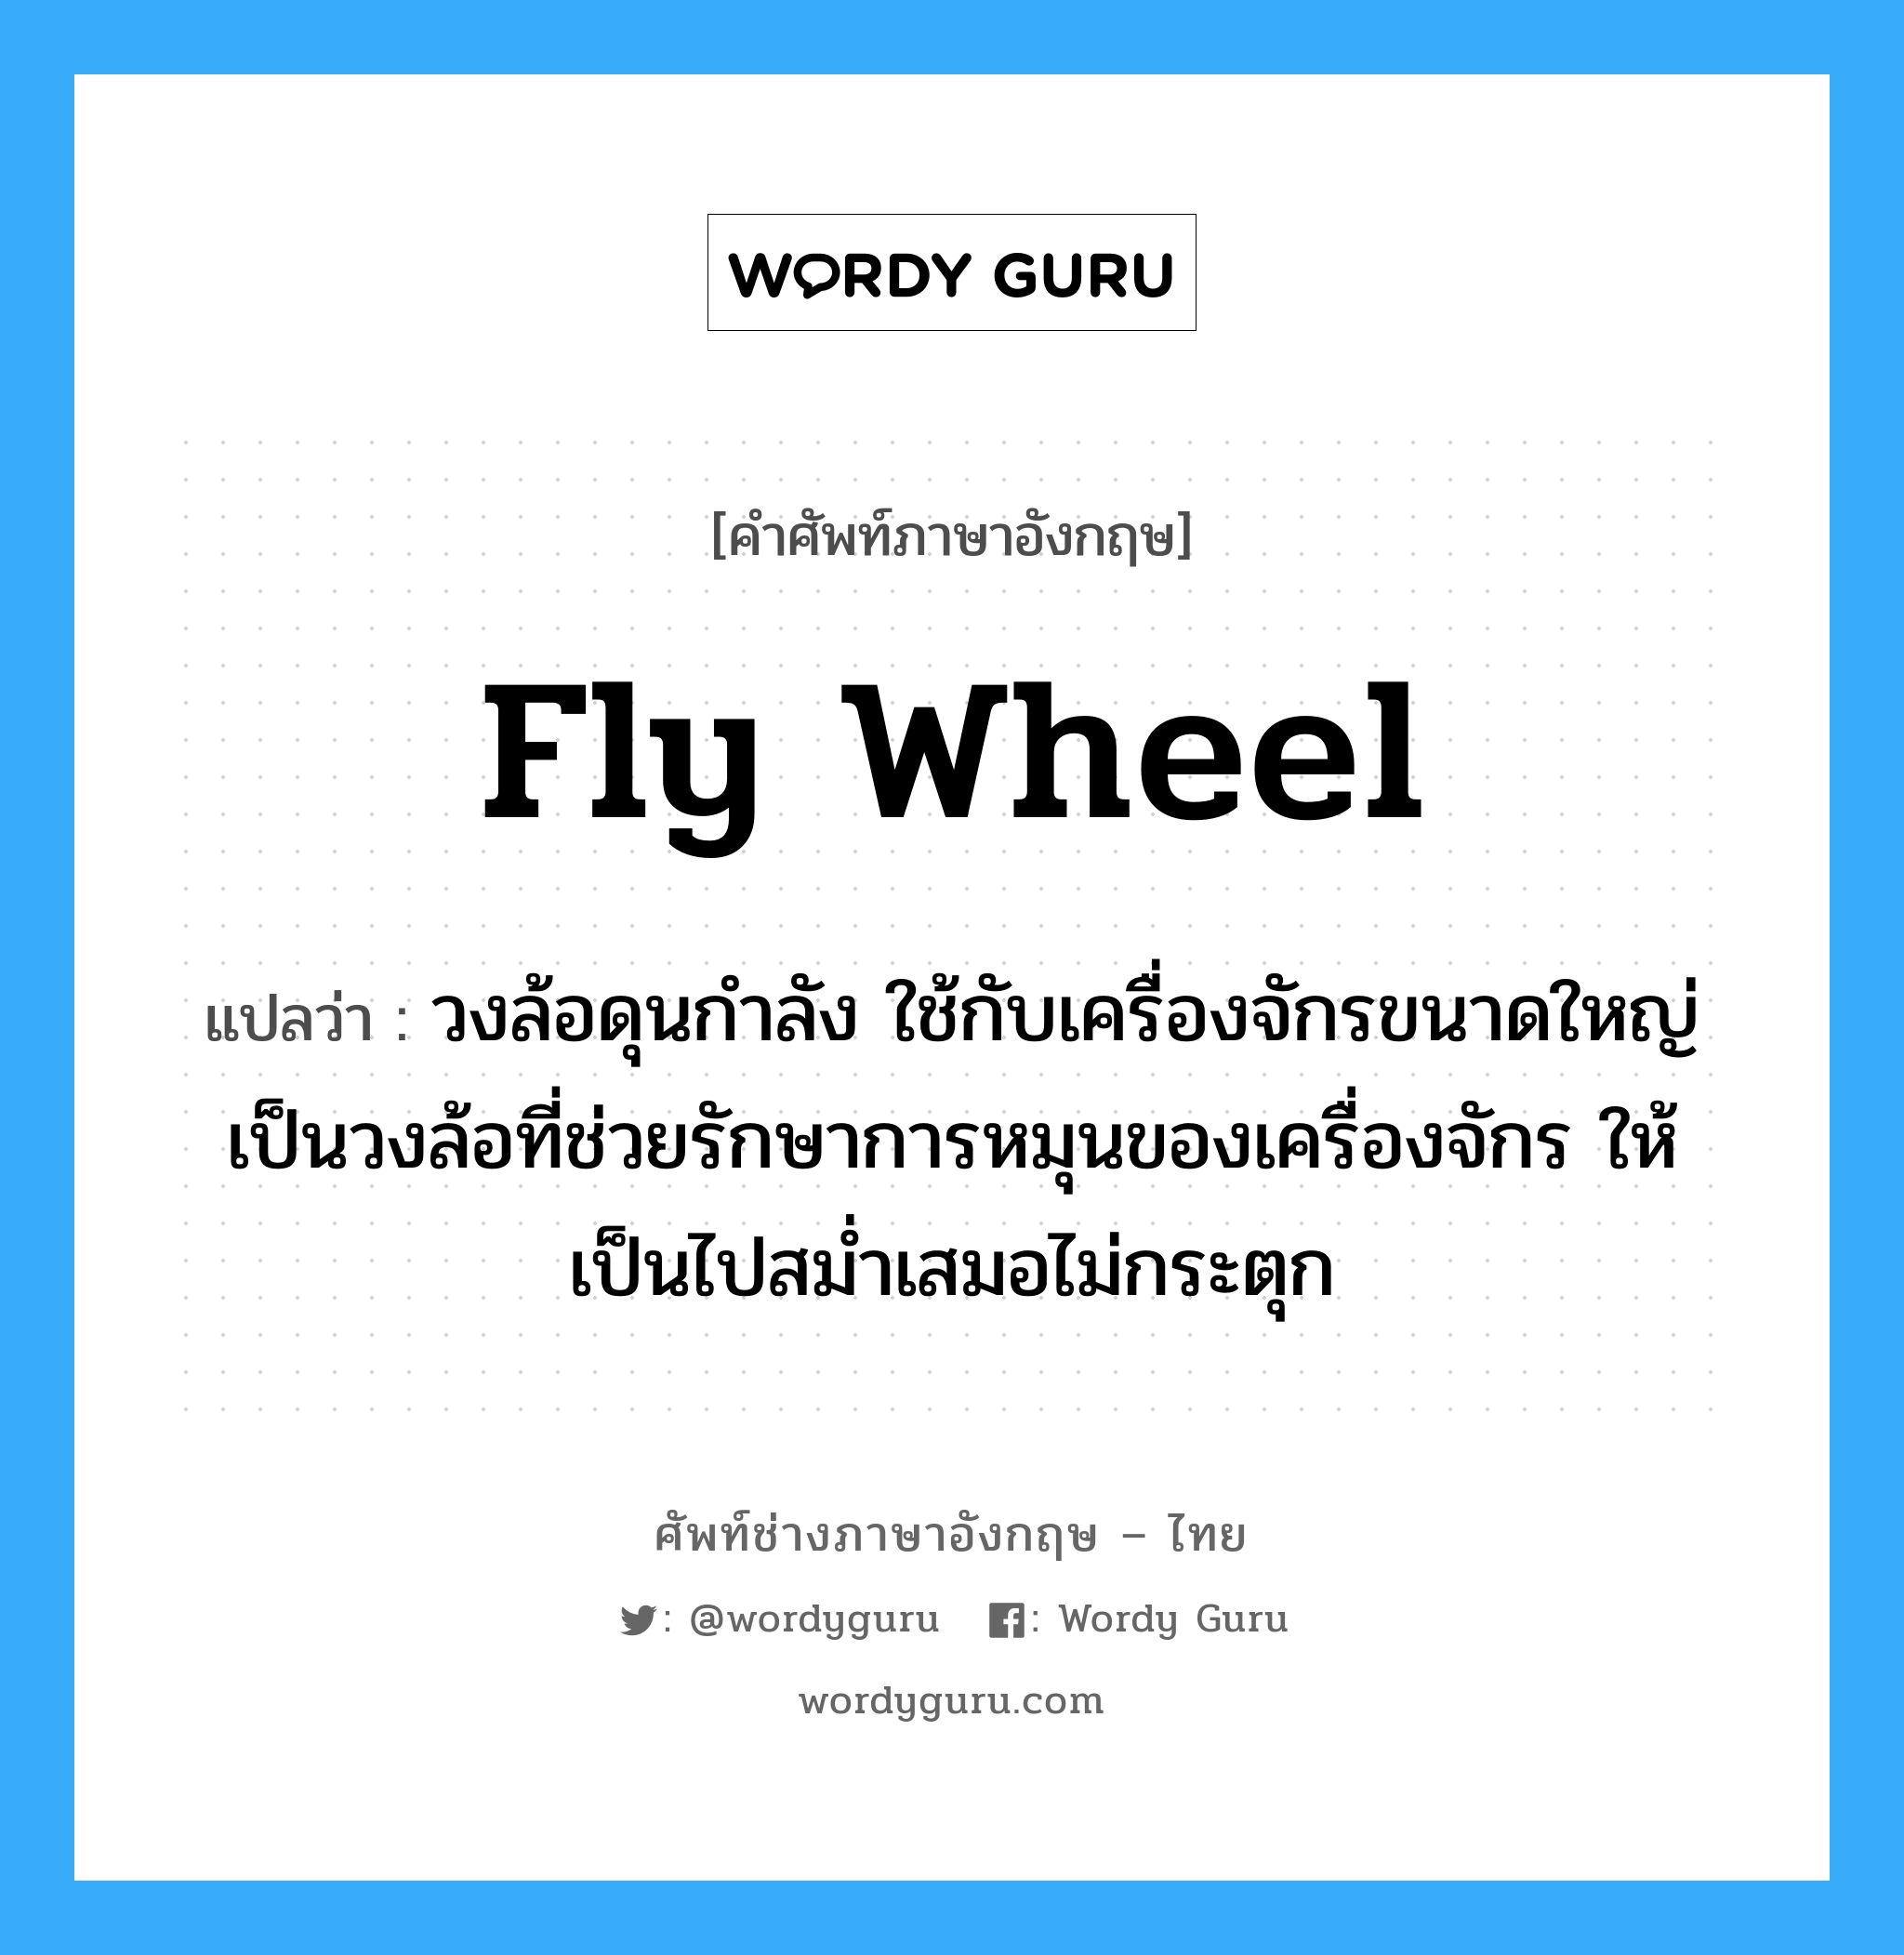 fly wheel แปลว่า?, คำศัพท์ช่างภาษาอังกฤษ - ไทย fly wheel คำศัพท์ภาษาอังกฤษ fly wheel แปลว่า วงล้อดุนกำลัง ใช้กับเครื่องจักรขนาดใหญ่ เป็นวงล้อที่ช่วยรักษาการหมุนของเครื่องจักร ให้เป็นไปสม่ำเสมอไม่กระตุก